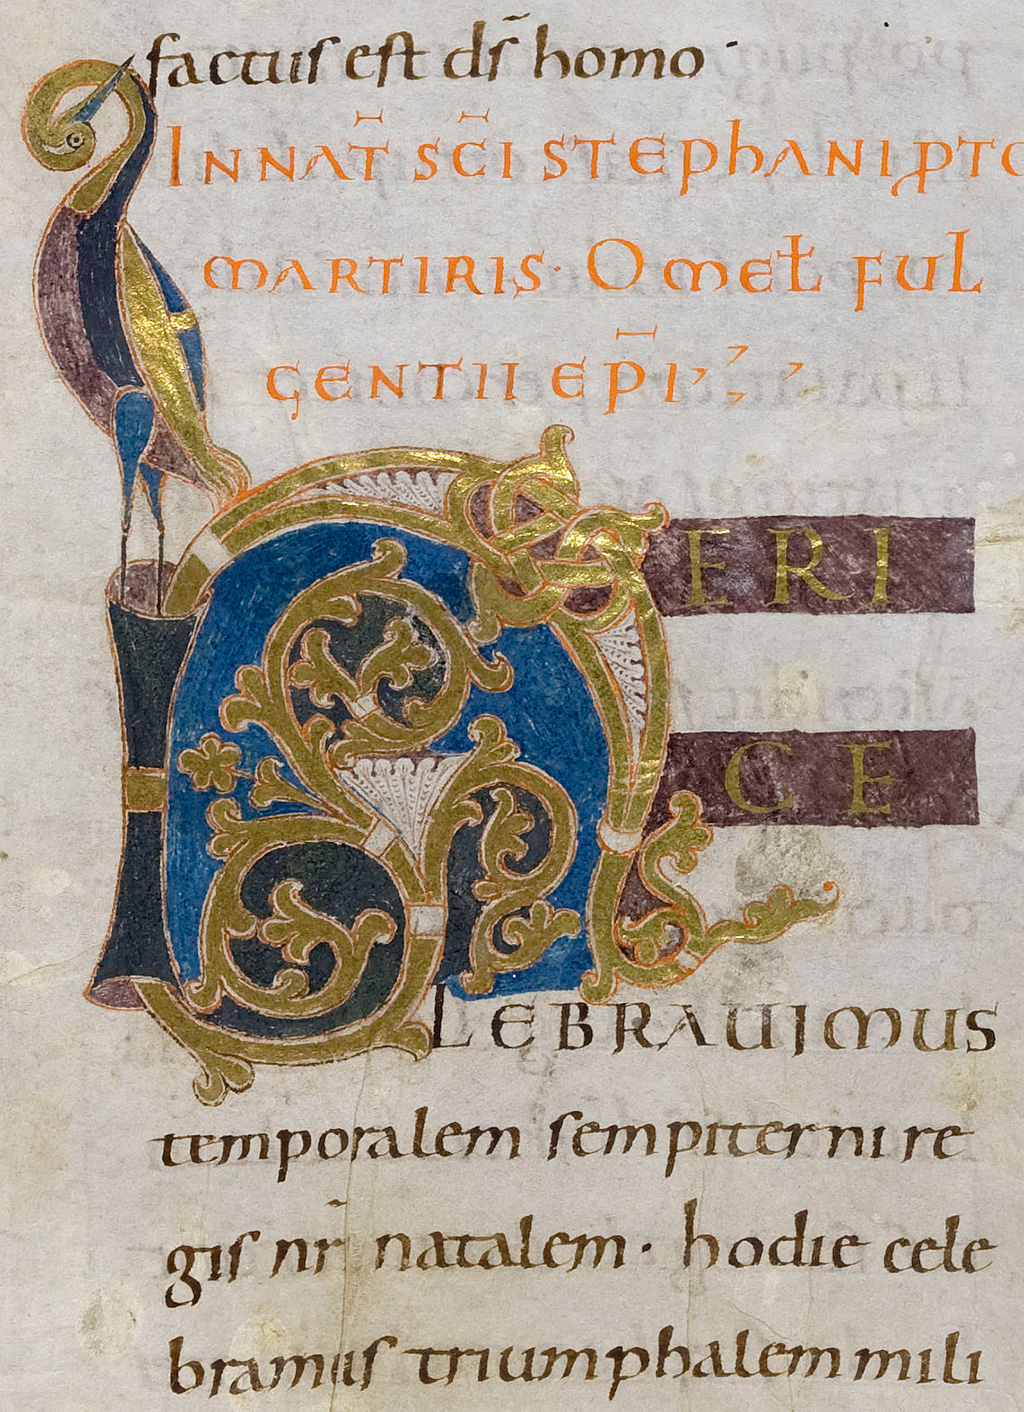 Zu sehen ist eine Ausschnitt aus dem Cod. Aug. perg. 16, Fol. 32r.  Neben kunstvollen lettern in Blau, Gold, Orange und Schwarz ist auch ein farbiger Kranich zu sehen.   